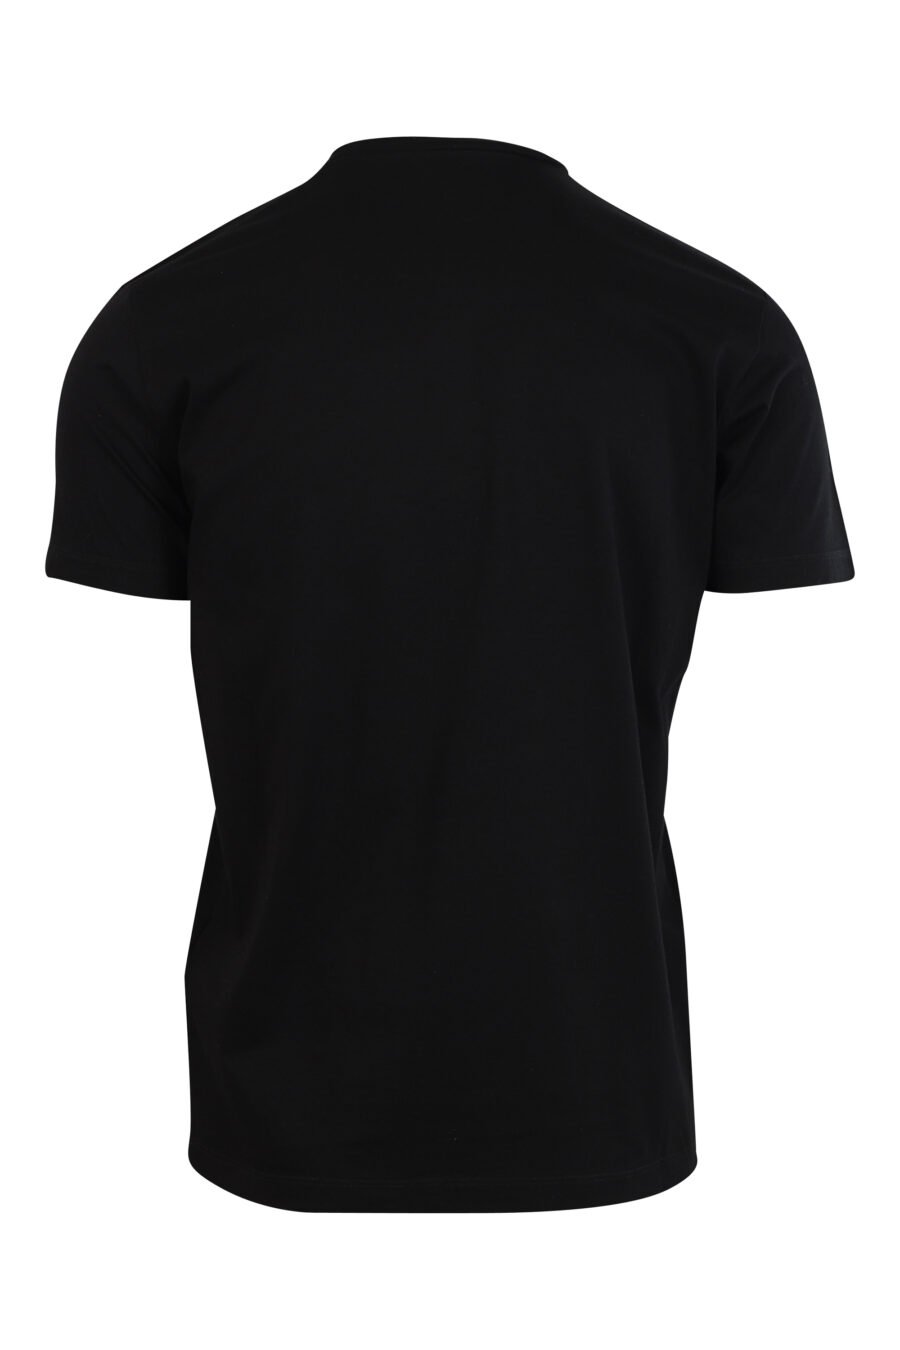 Camiseta negra con maxilogo "icon heart pixel" - 8052134980910 2